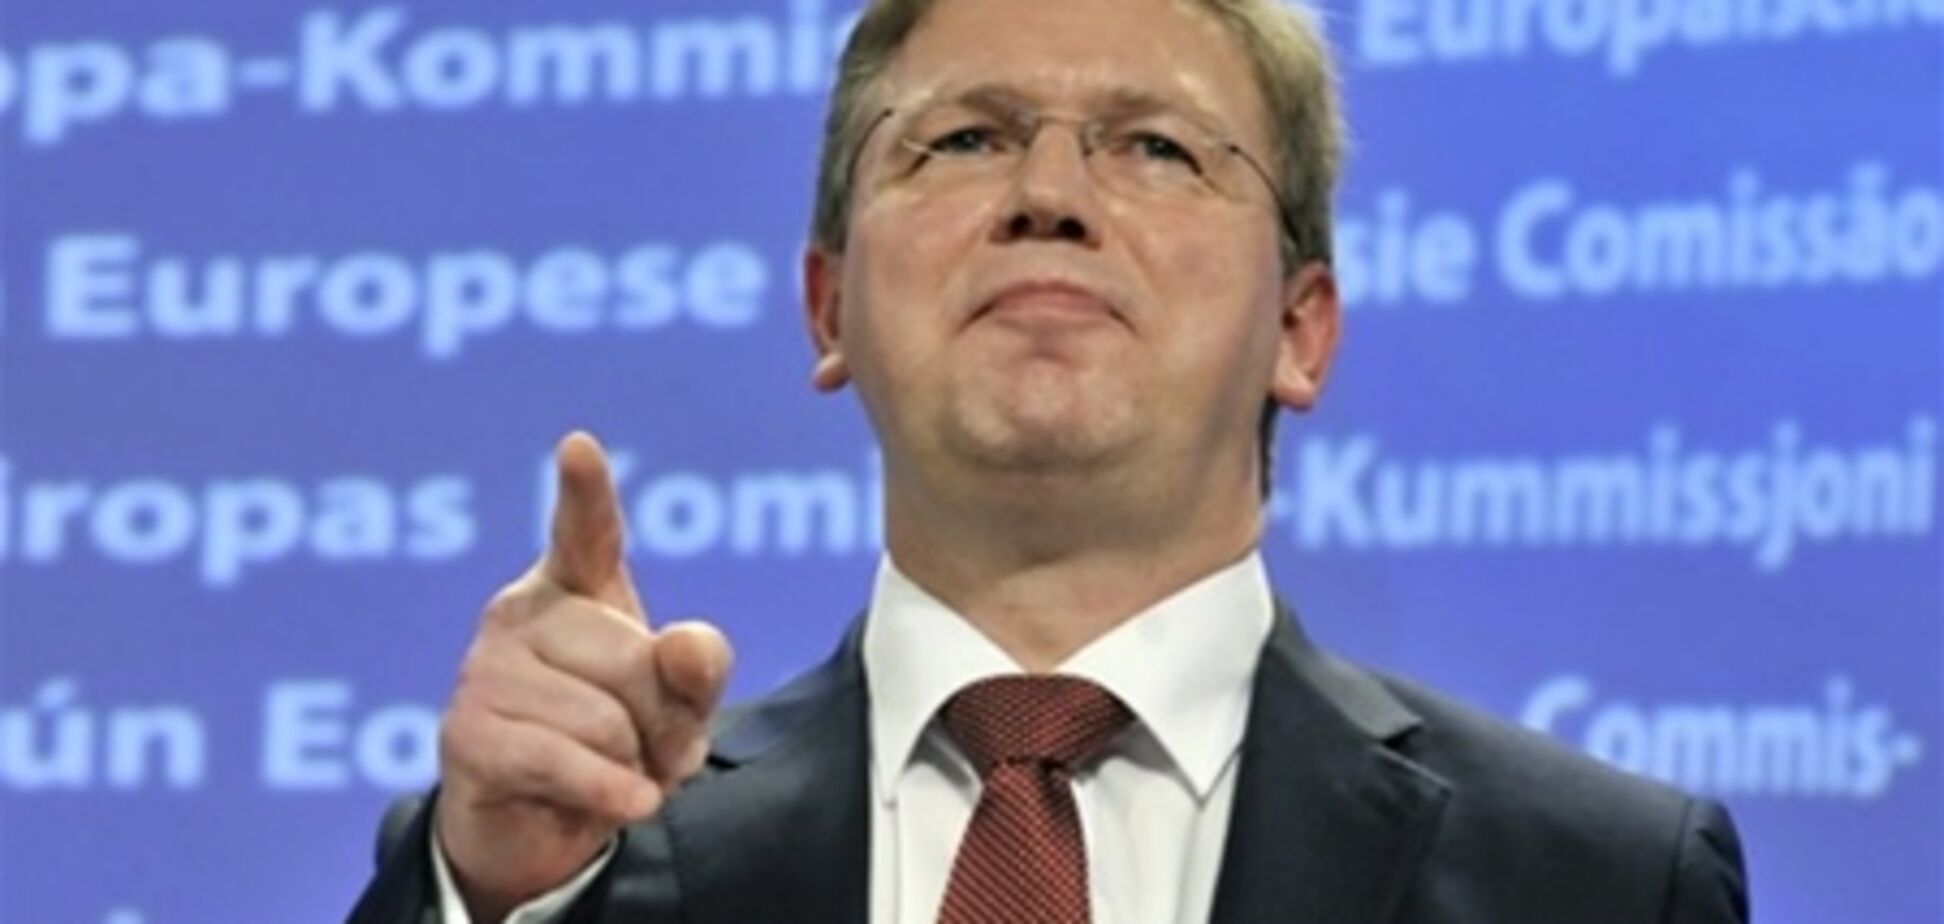 Єврокомісар Фюле передав слова підтримки Тимошенко